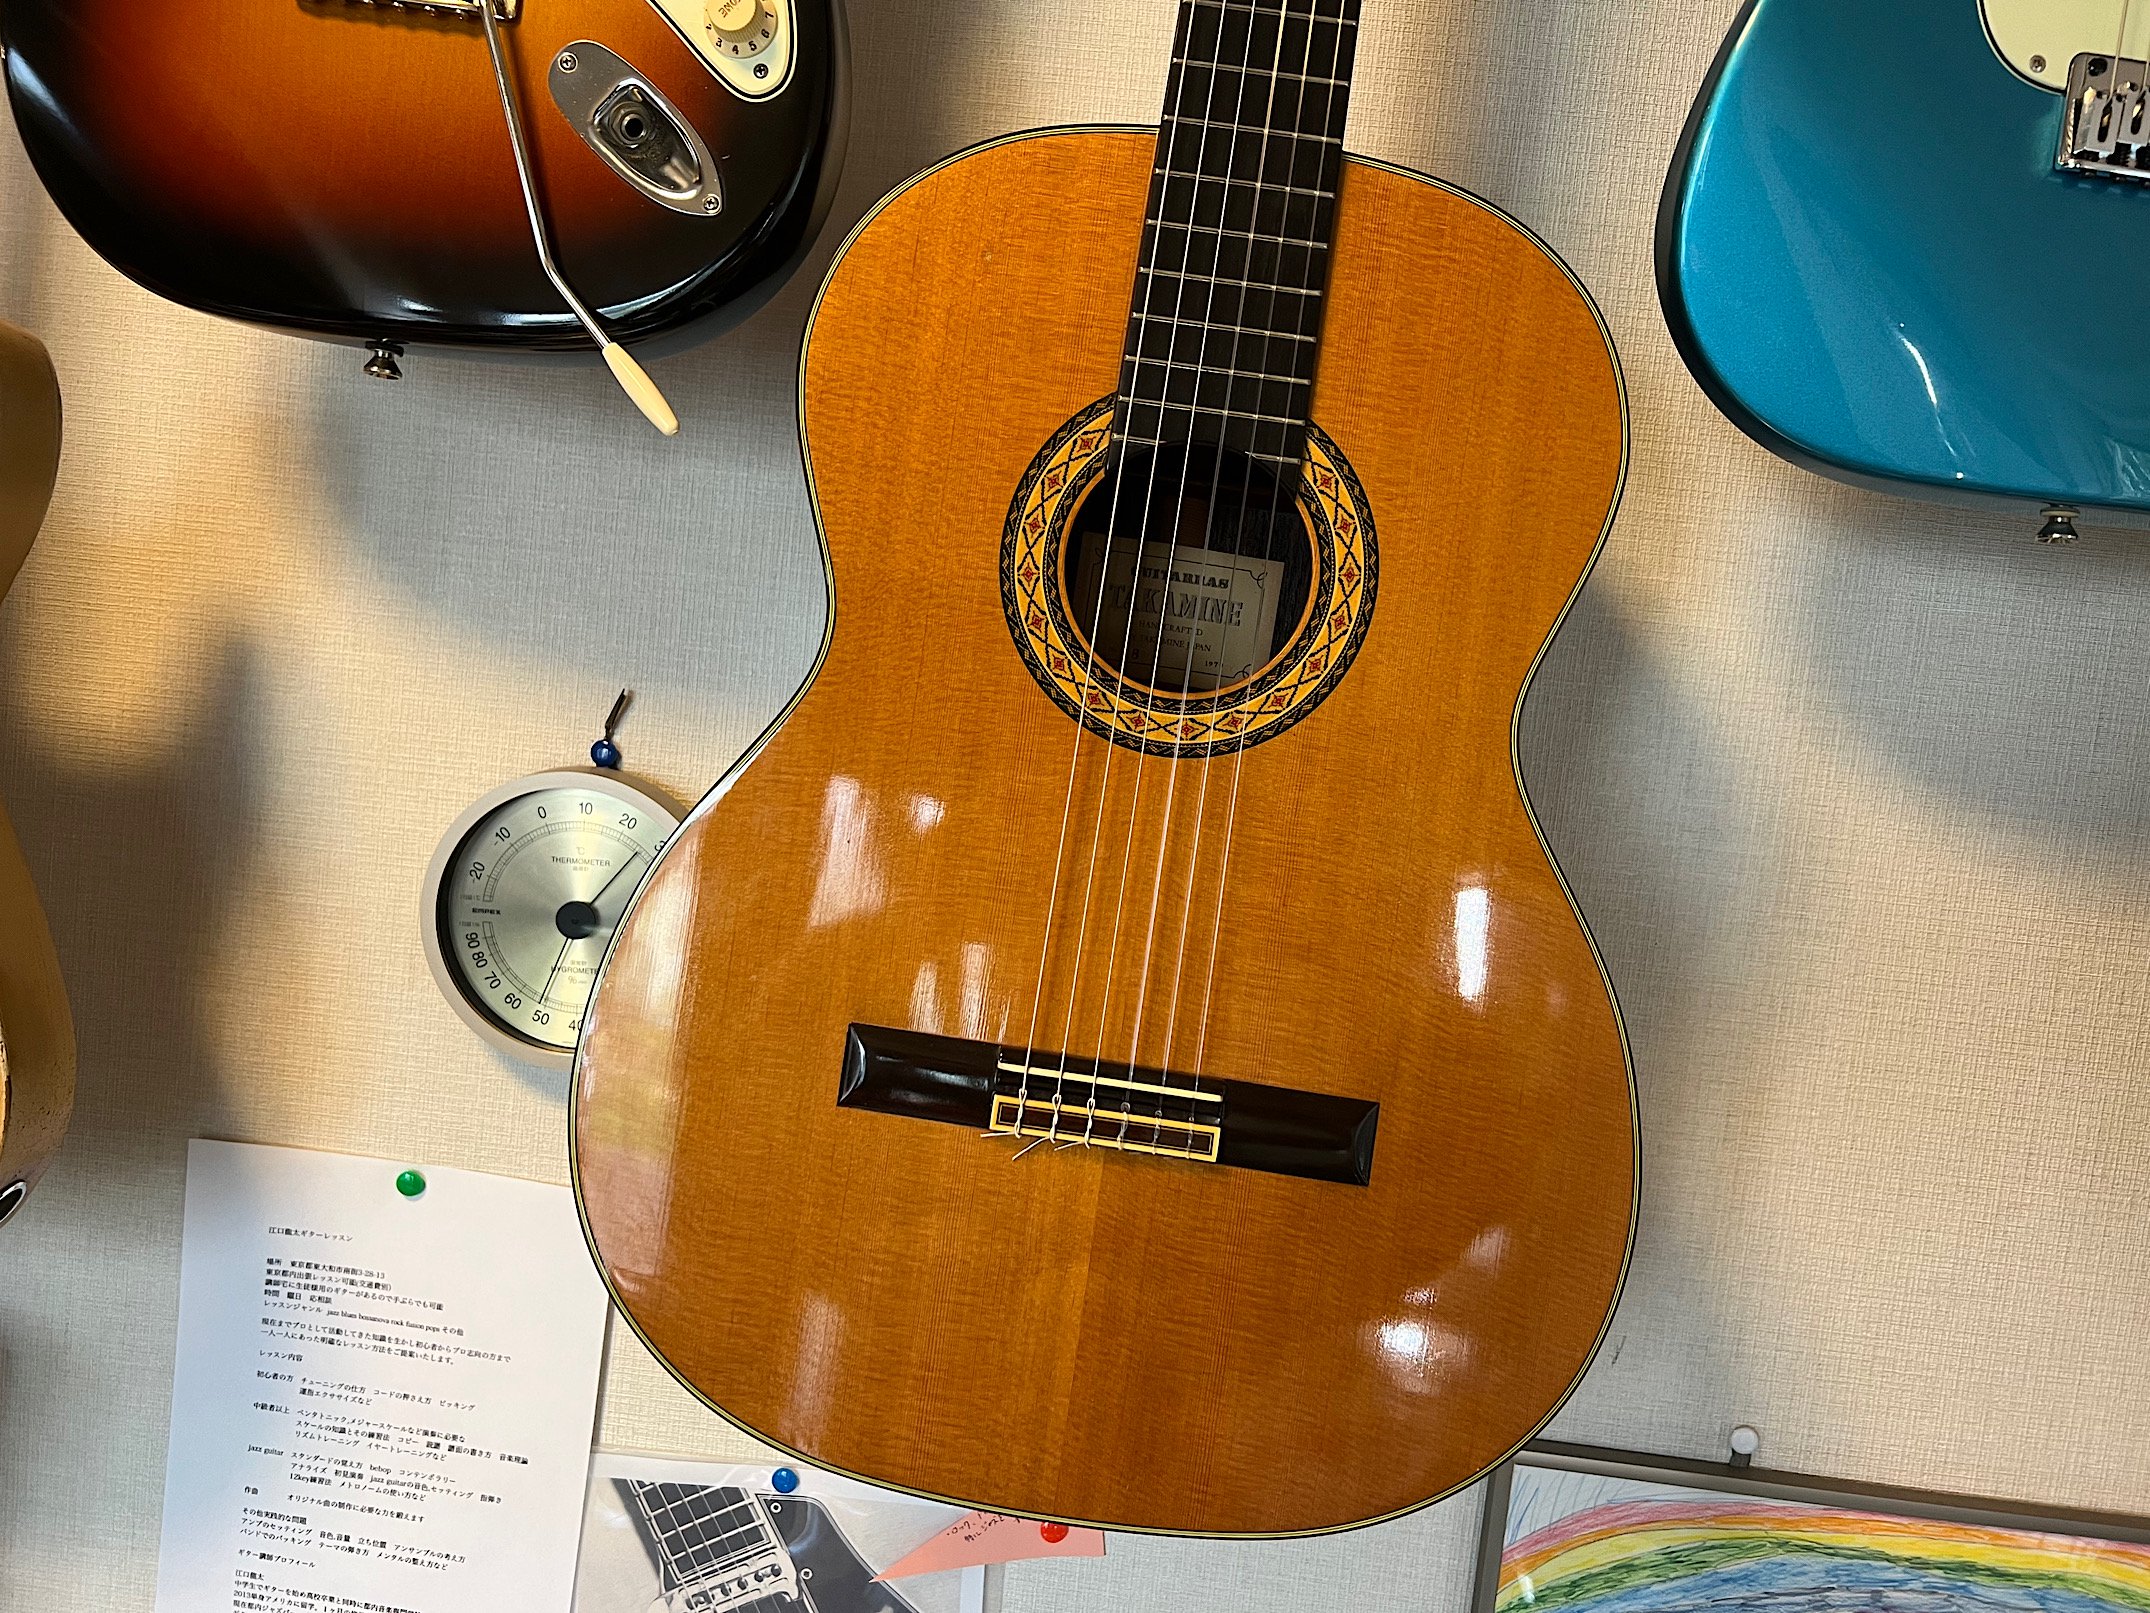 TAKAMINE NO.8 1979 ７９年製のタカミネのクラシックギター ！とても品質の高いおすすめ品です。 - ギター買取 東京 -  ギターのじゃべらぼう